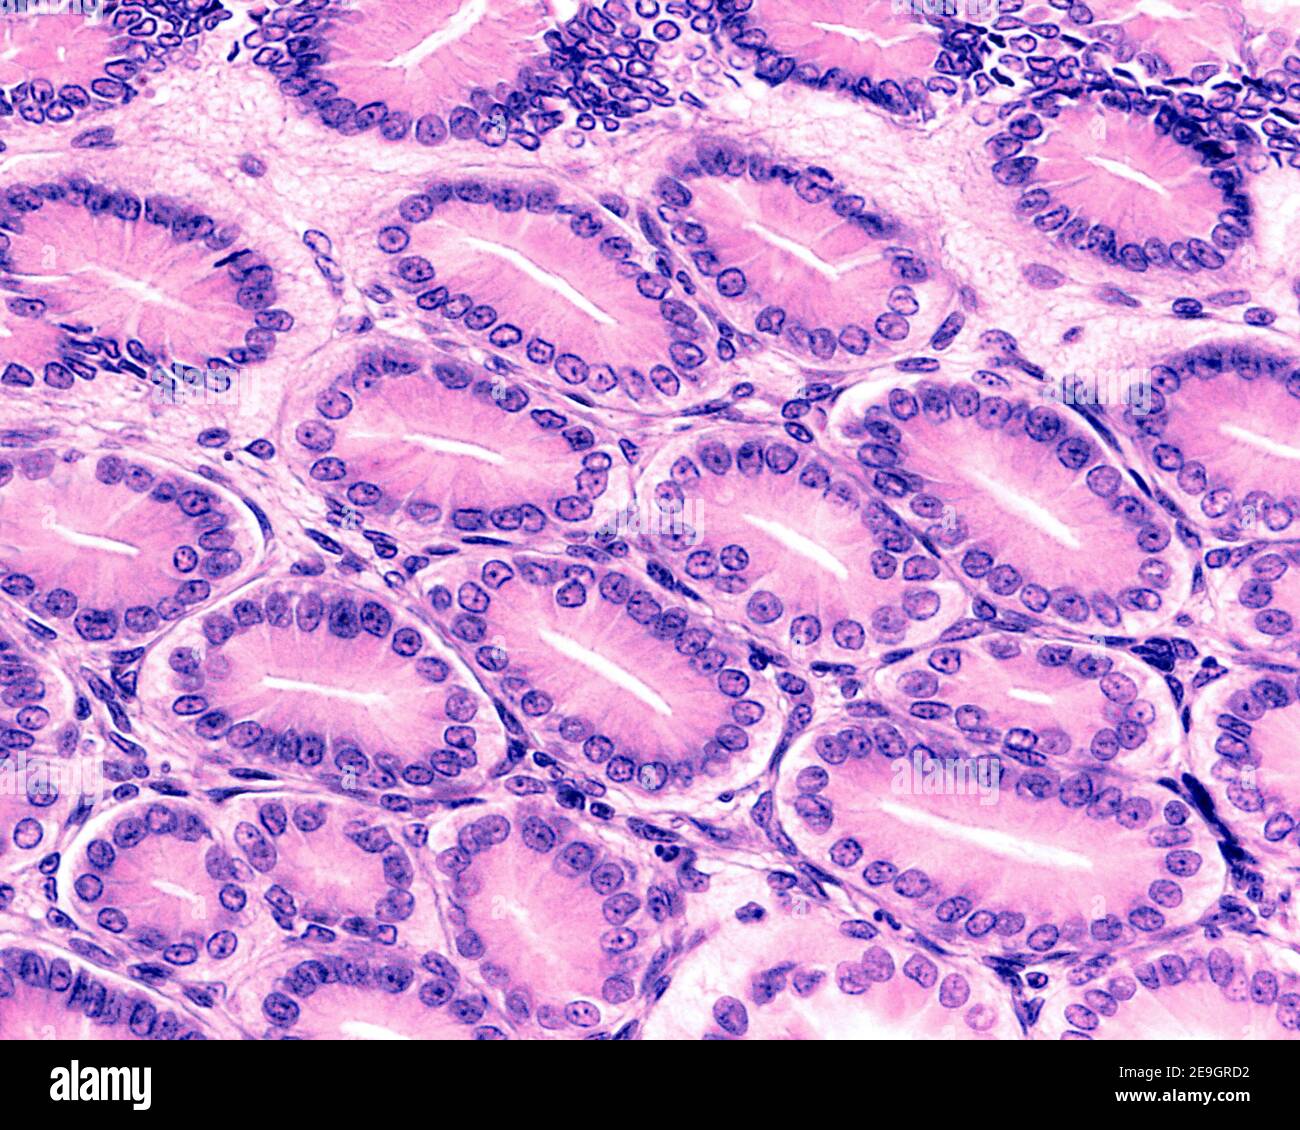 Coupe transversale de fosses gastriques bordées par l'épithélium de surface de l'estomac, formé par des cellules sécrétrices de mucus appelées cellules foveolaires Banque D'Images